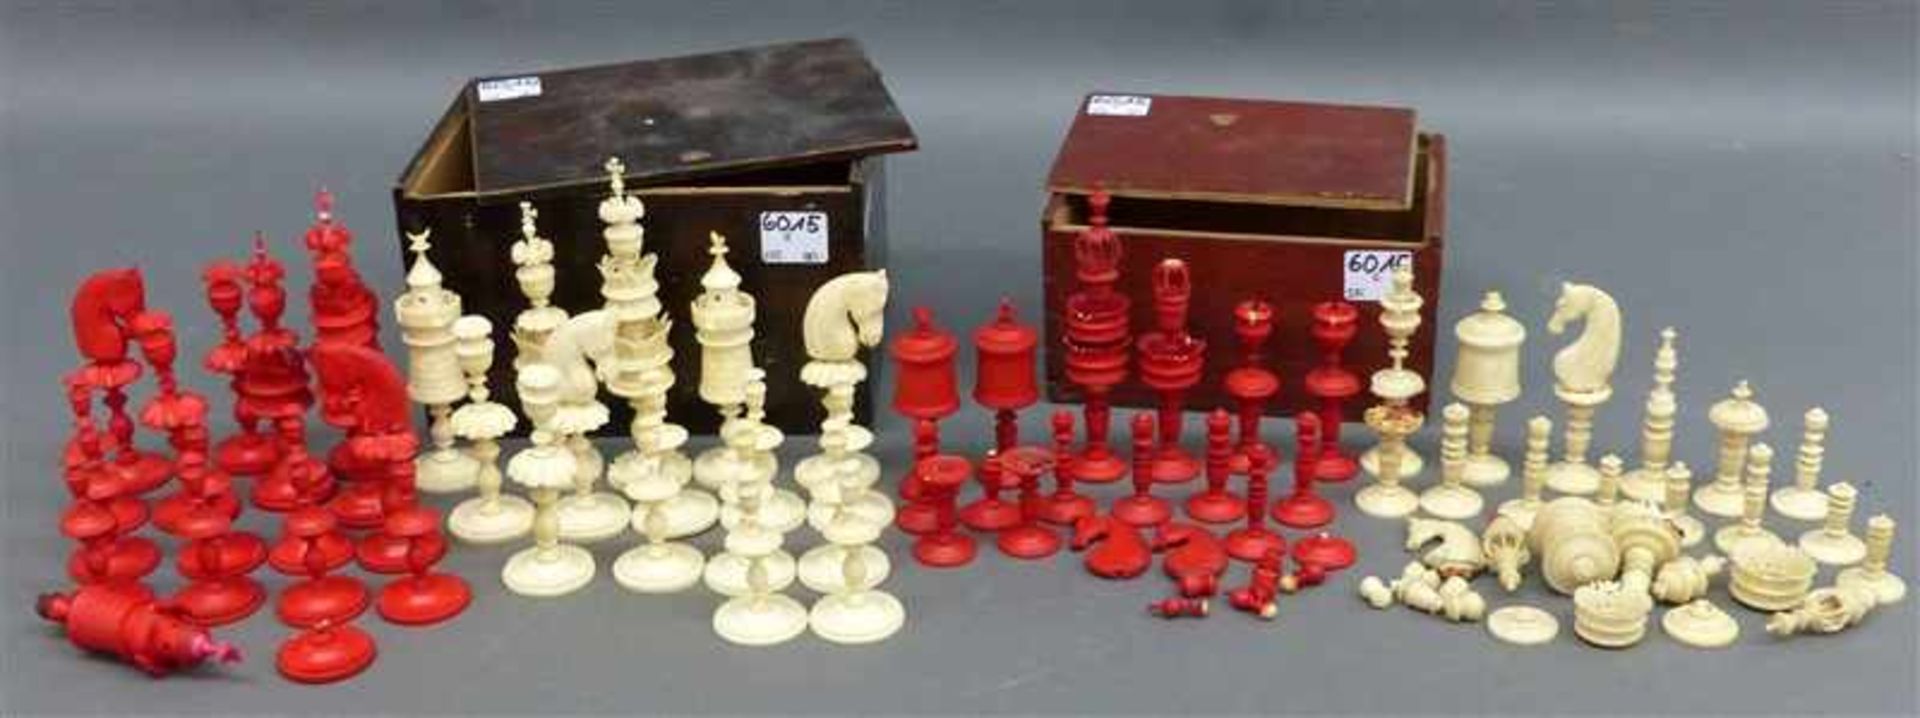 Paar Schachspiele, 19. Jh. Elfenbein, rot und weiß, 1 x komplett, 1 Turm beschädigt, beschnitzt,